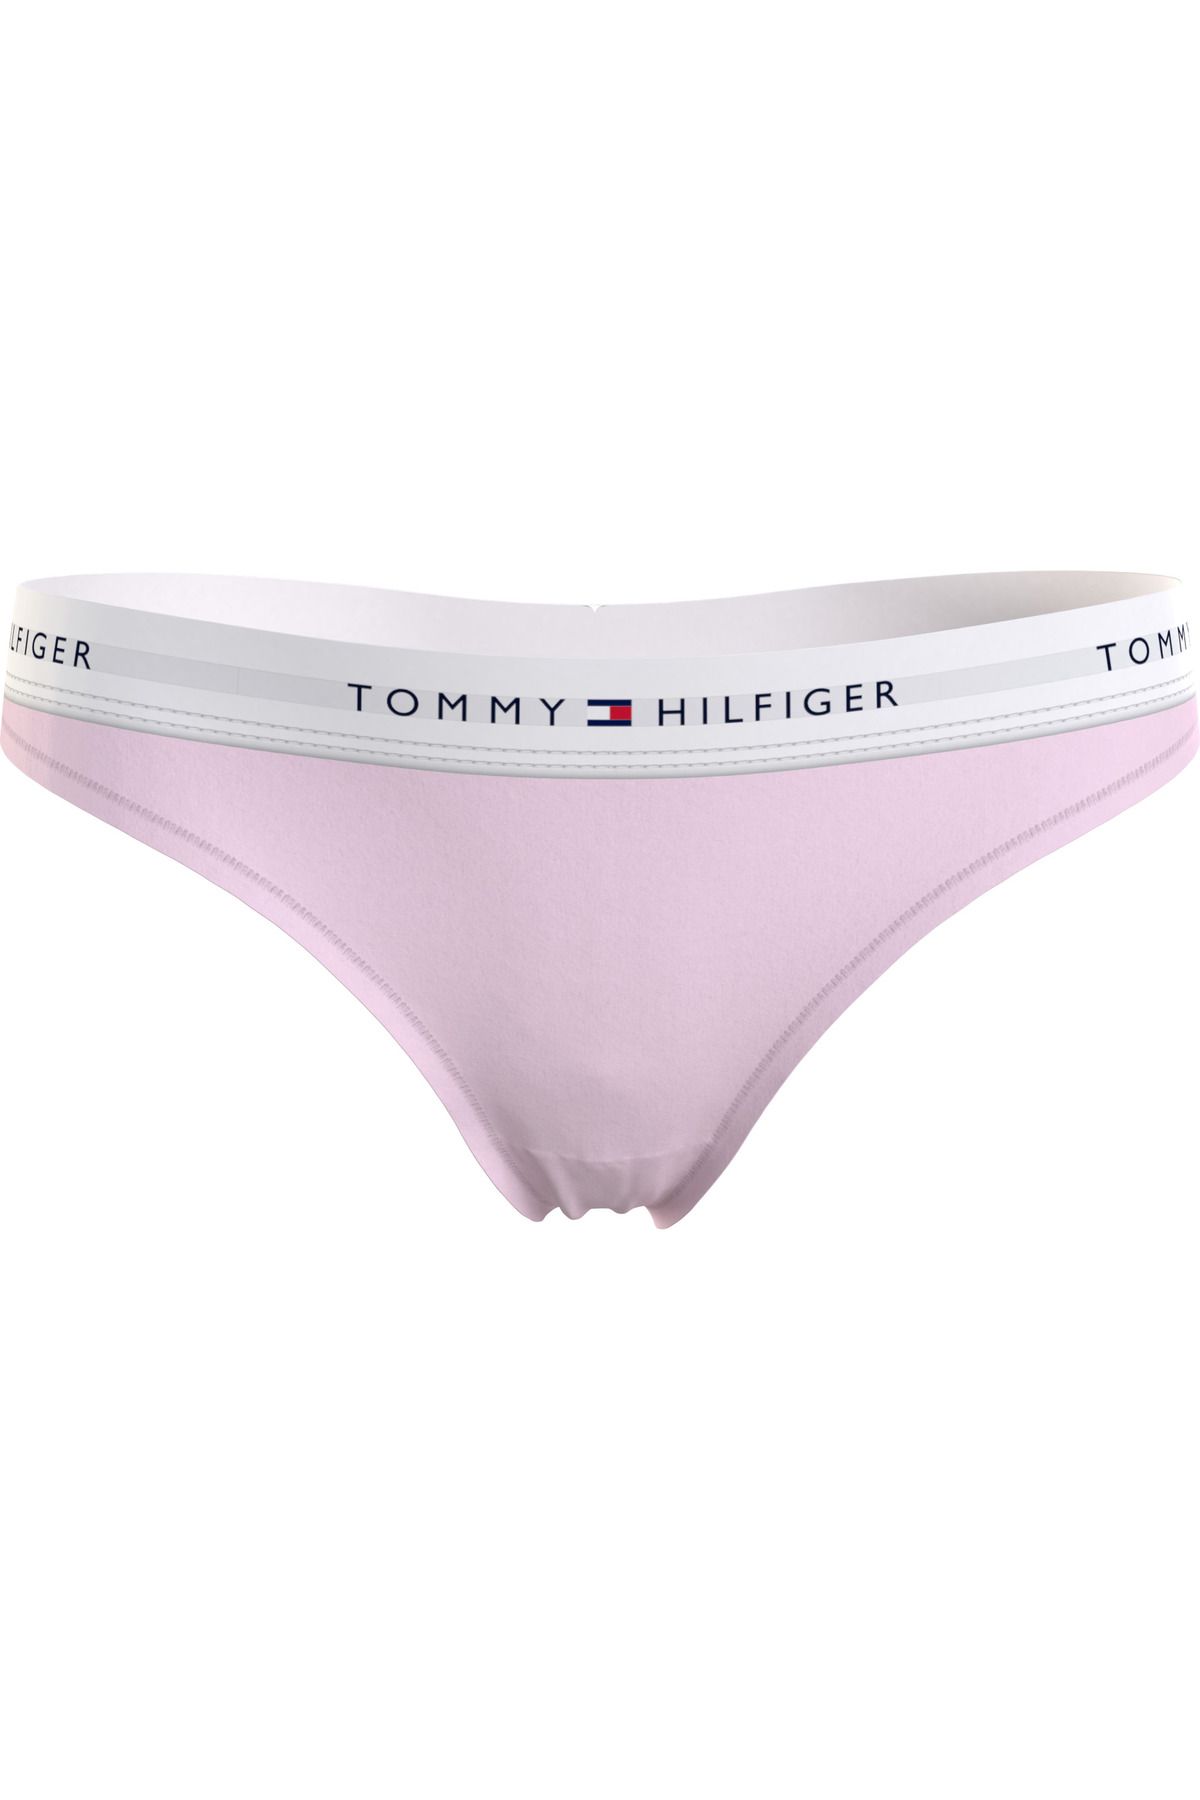 Tommy Hilfiger Kadın Marka Logolu Elastik Bantlı Günlük Kullanıma Uygun Pembe Külot Uw0uw03835-Tog